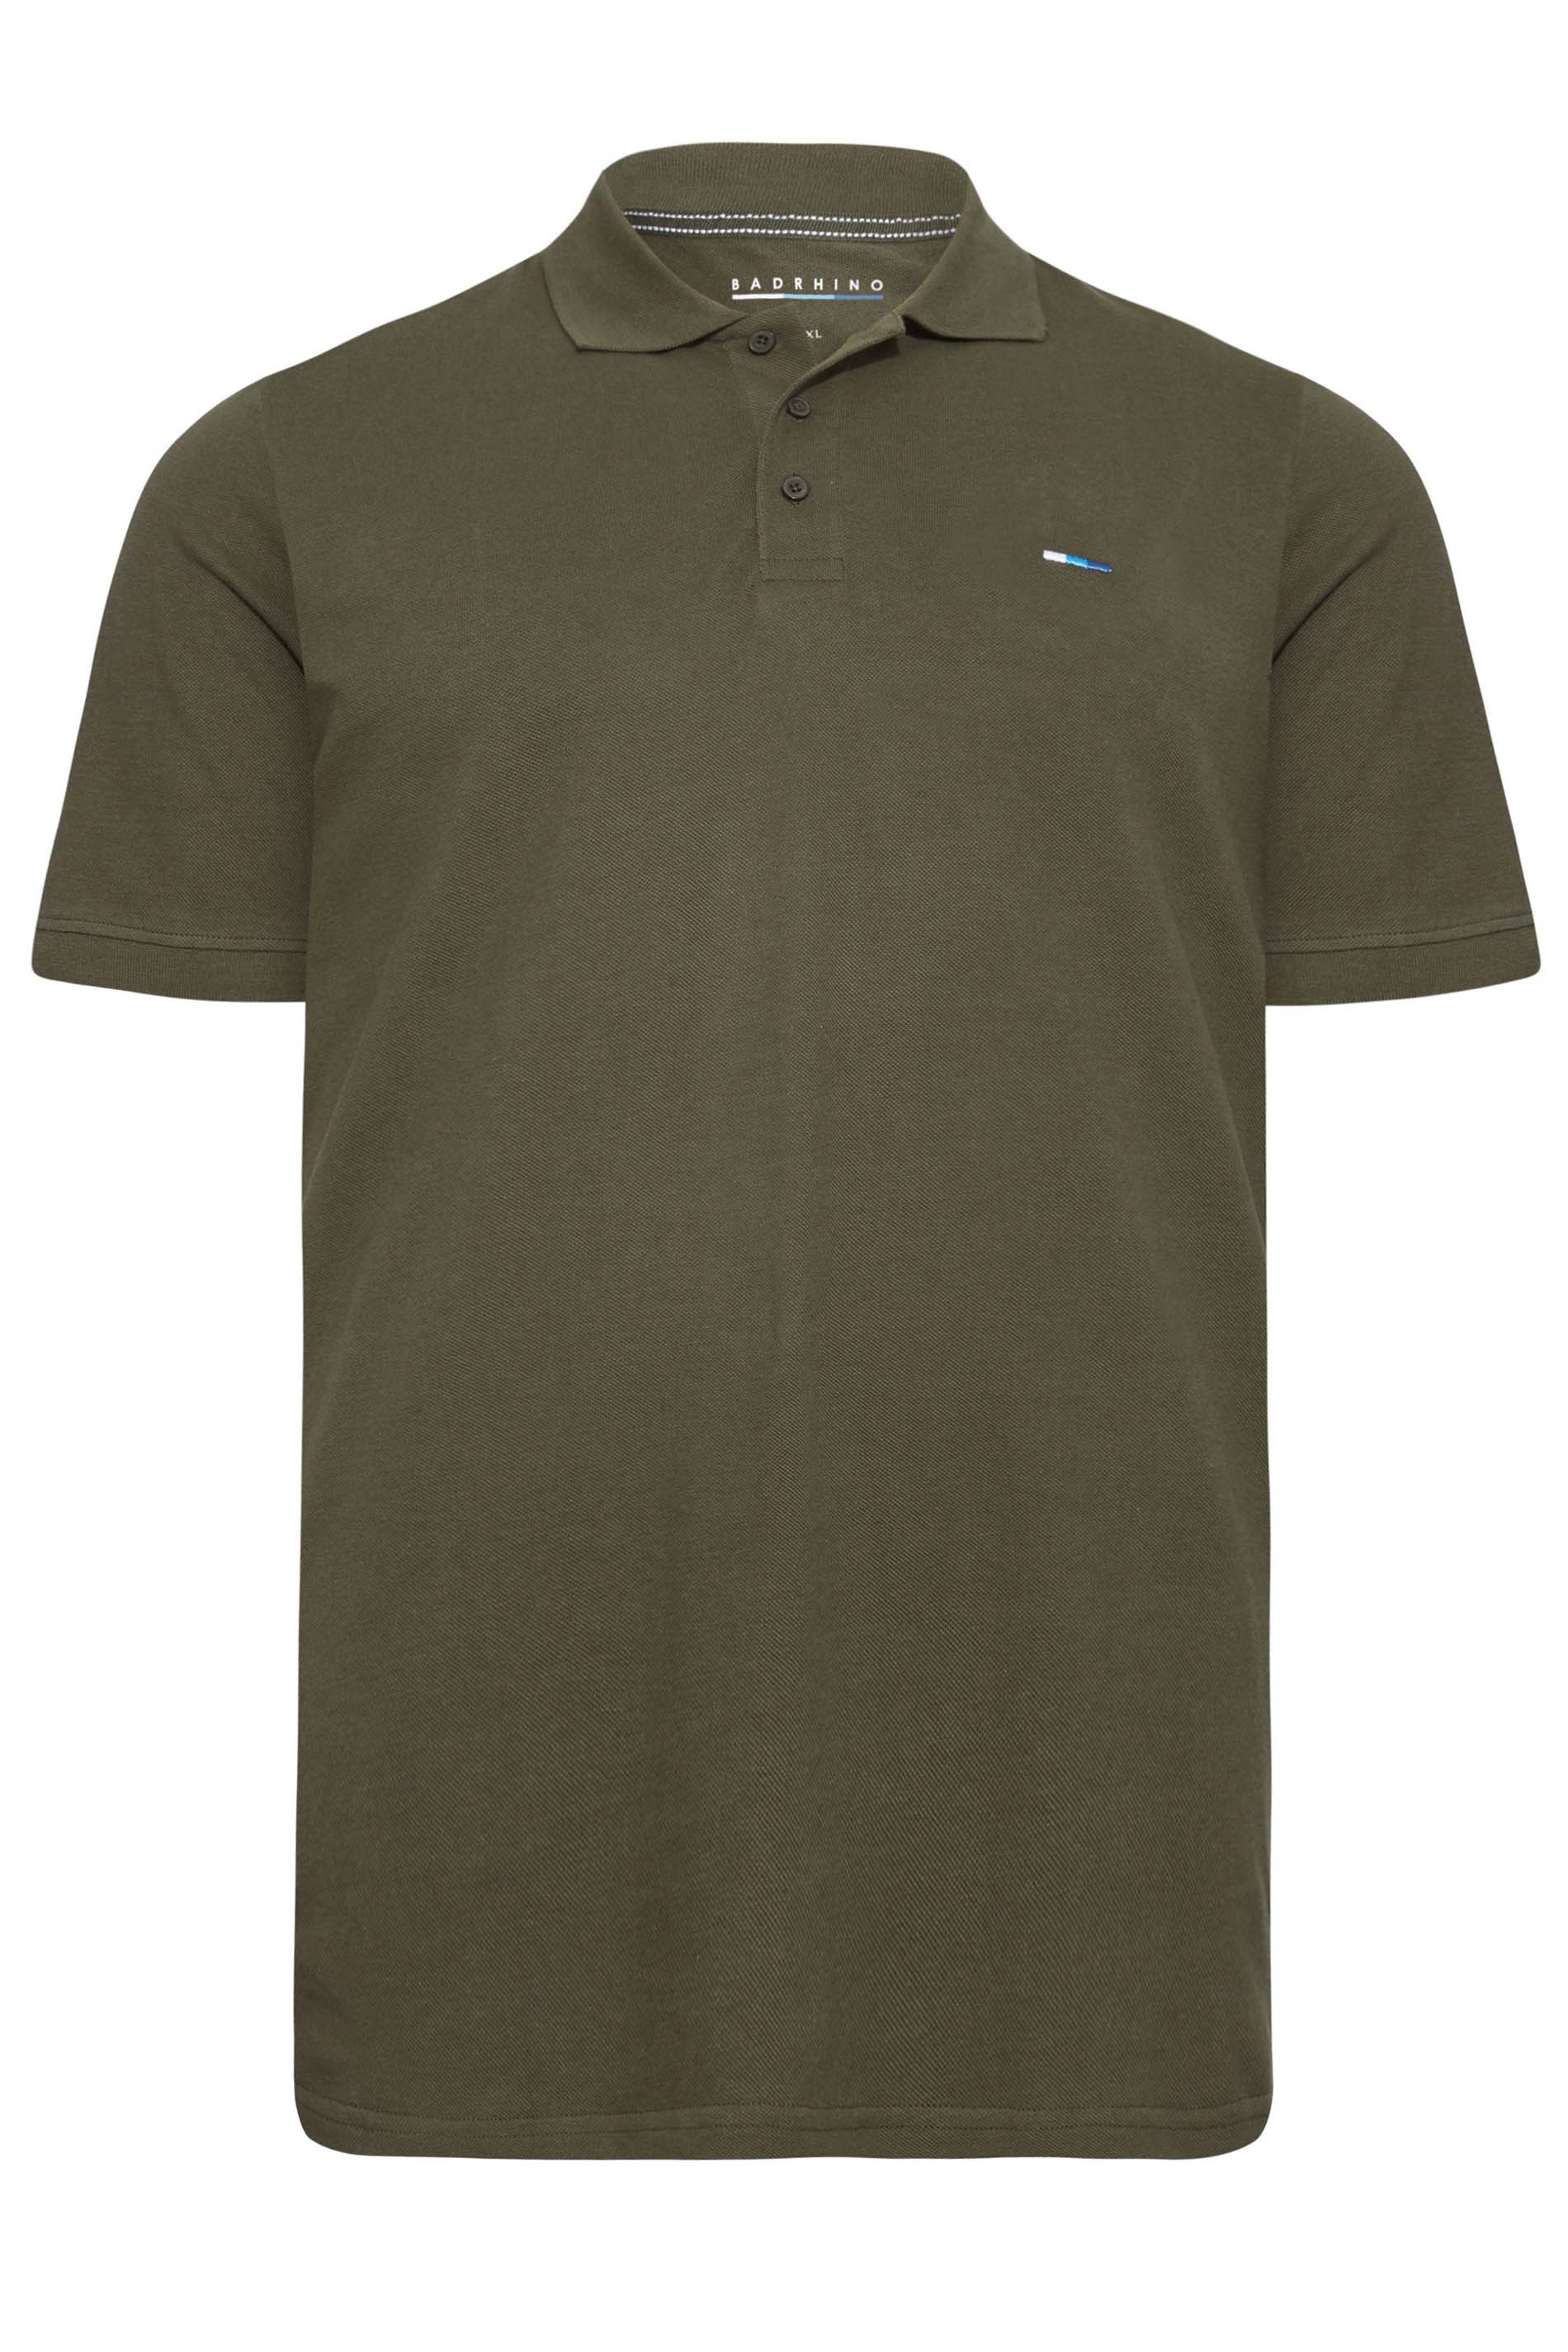 BadRhino Khaki Green Essential Polo Shirt | BadRhino 3